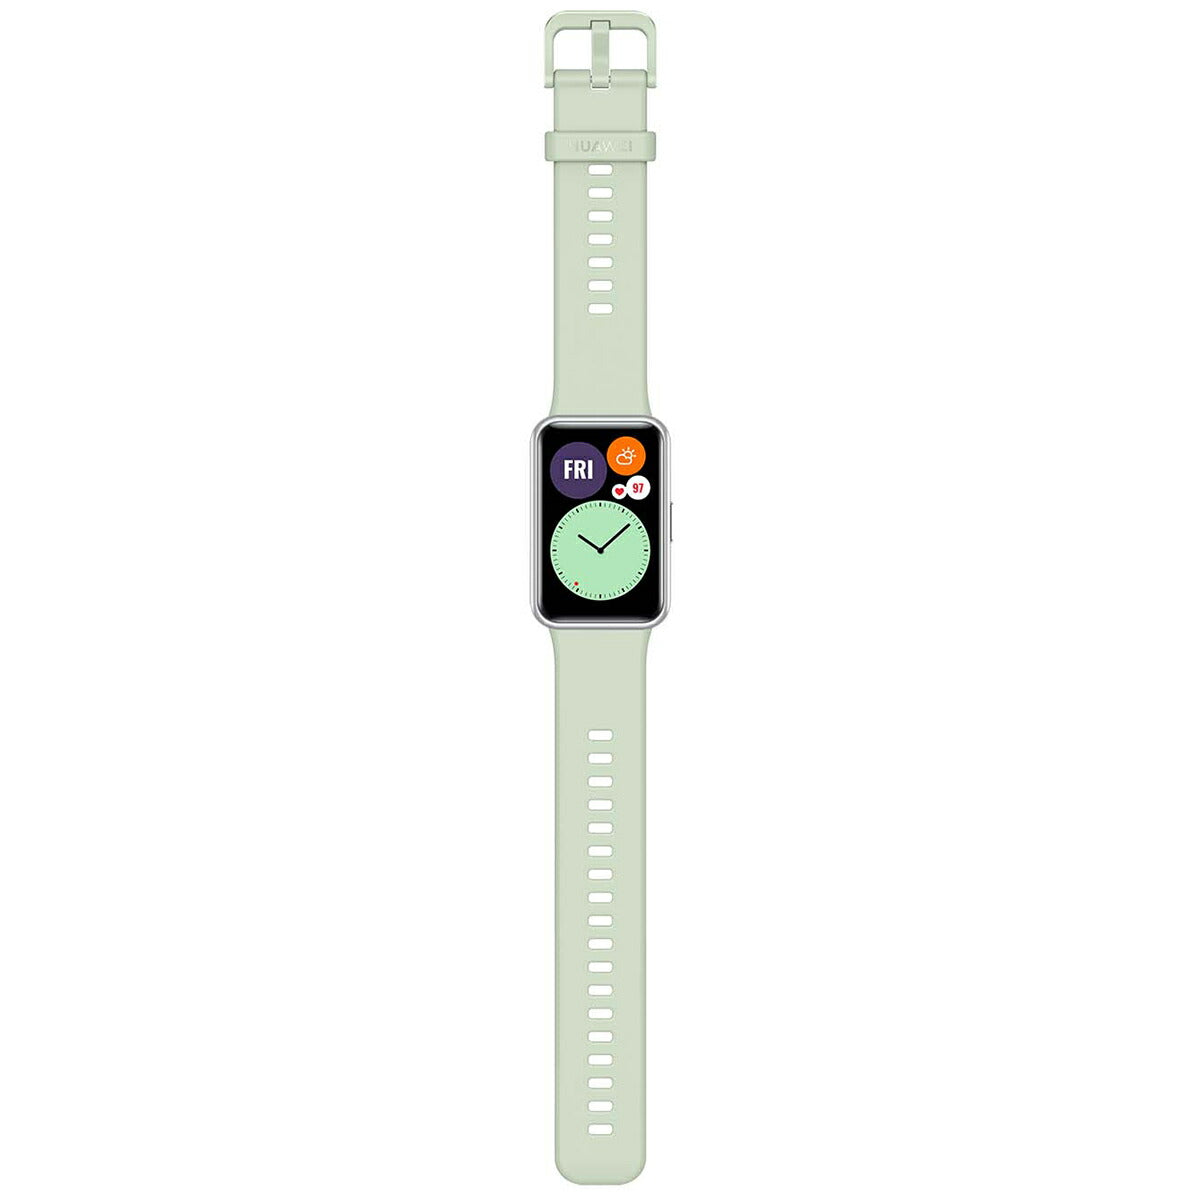 ファーウェイ HUAWEI スマートウォッチ WATCH FIT Mint Green ミントグリーン GPS 腕時計 メンズ レディース ウェアラブル 血中酸素 HV8W000120